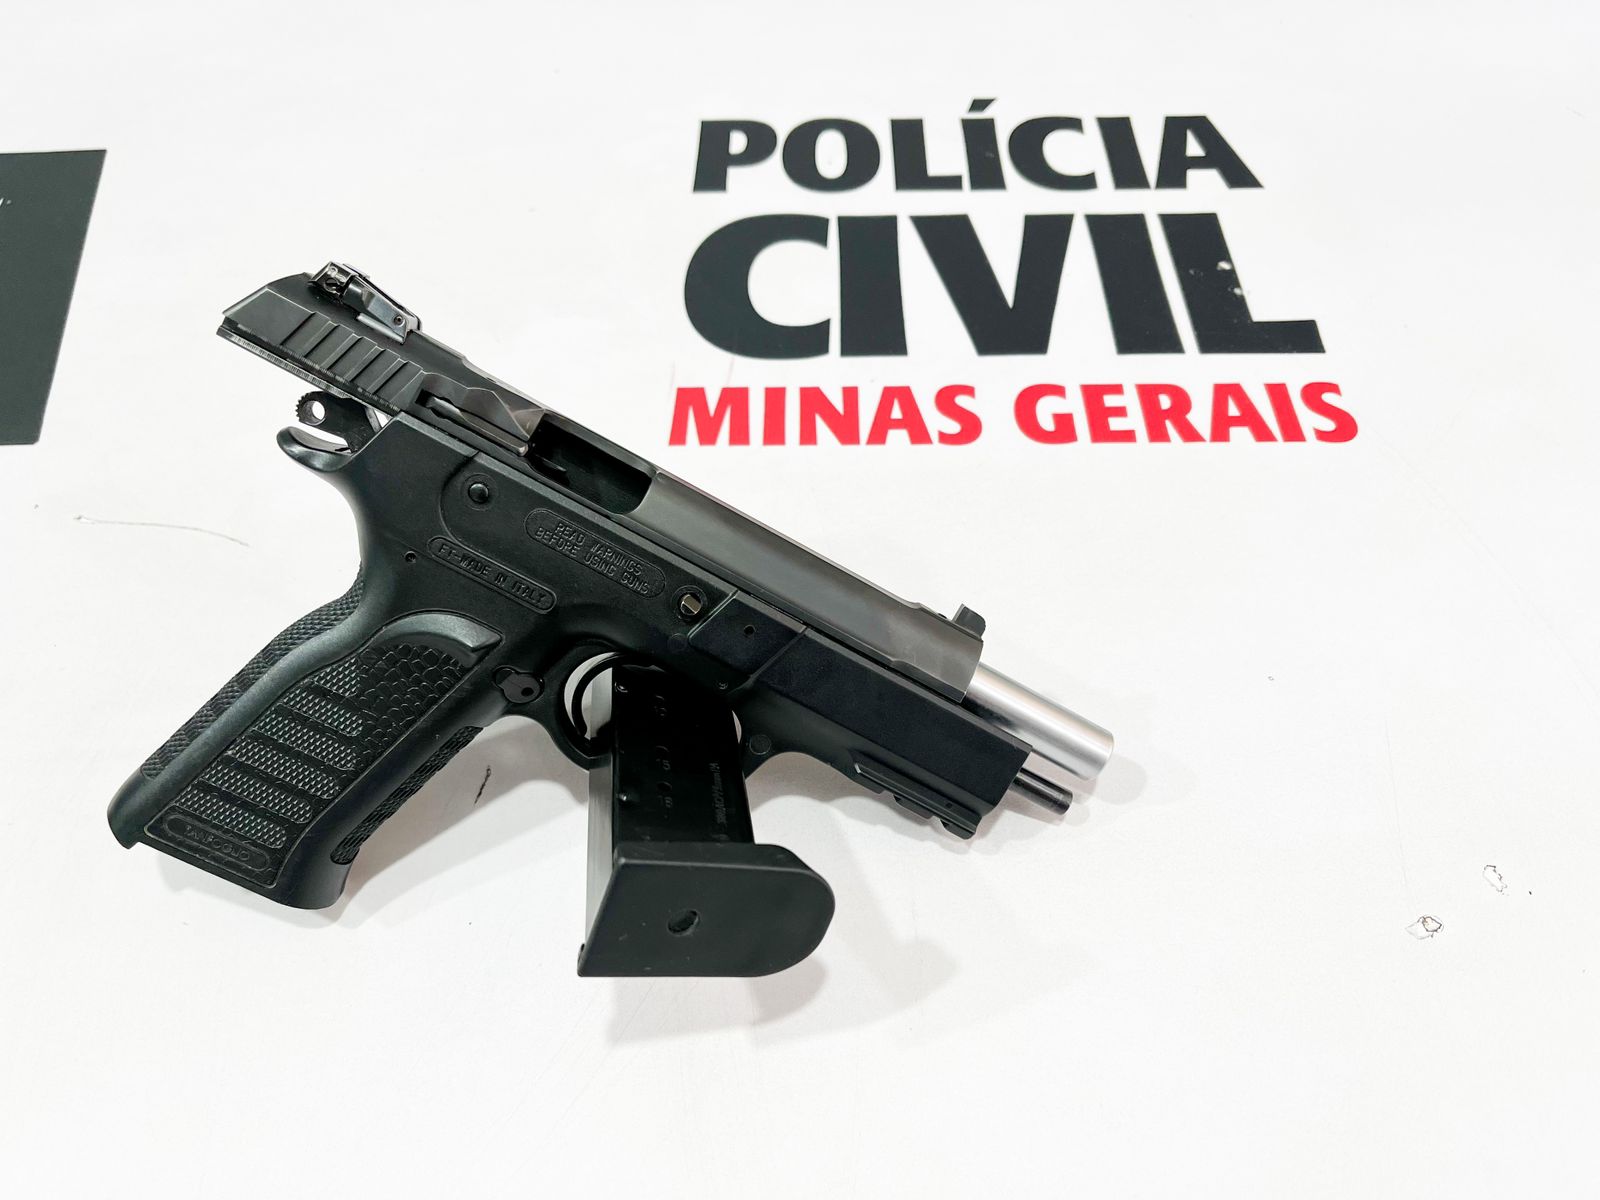 Foto: Policia Civil